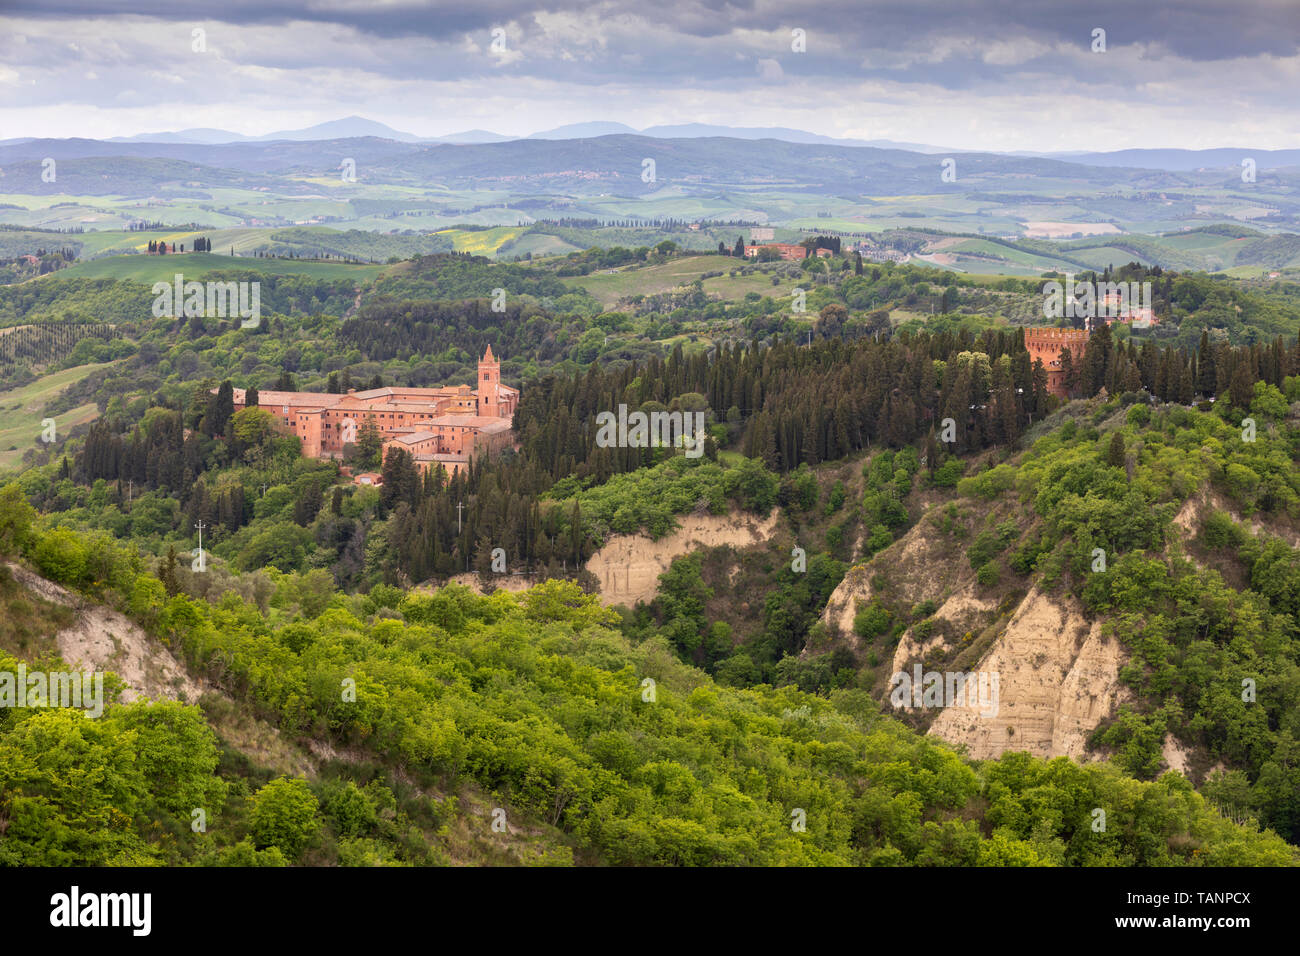 Abbazia di Monte Oliveto Maggiore monastery and Tuscan landscape, Chiusure, Siena Province, Tuscany, Italy, Europe Stock Photo